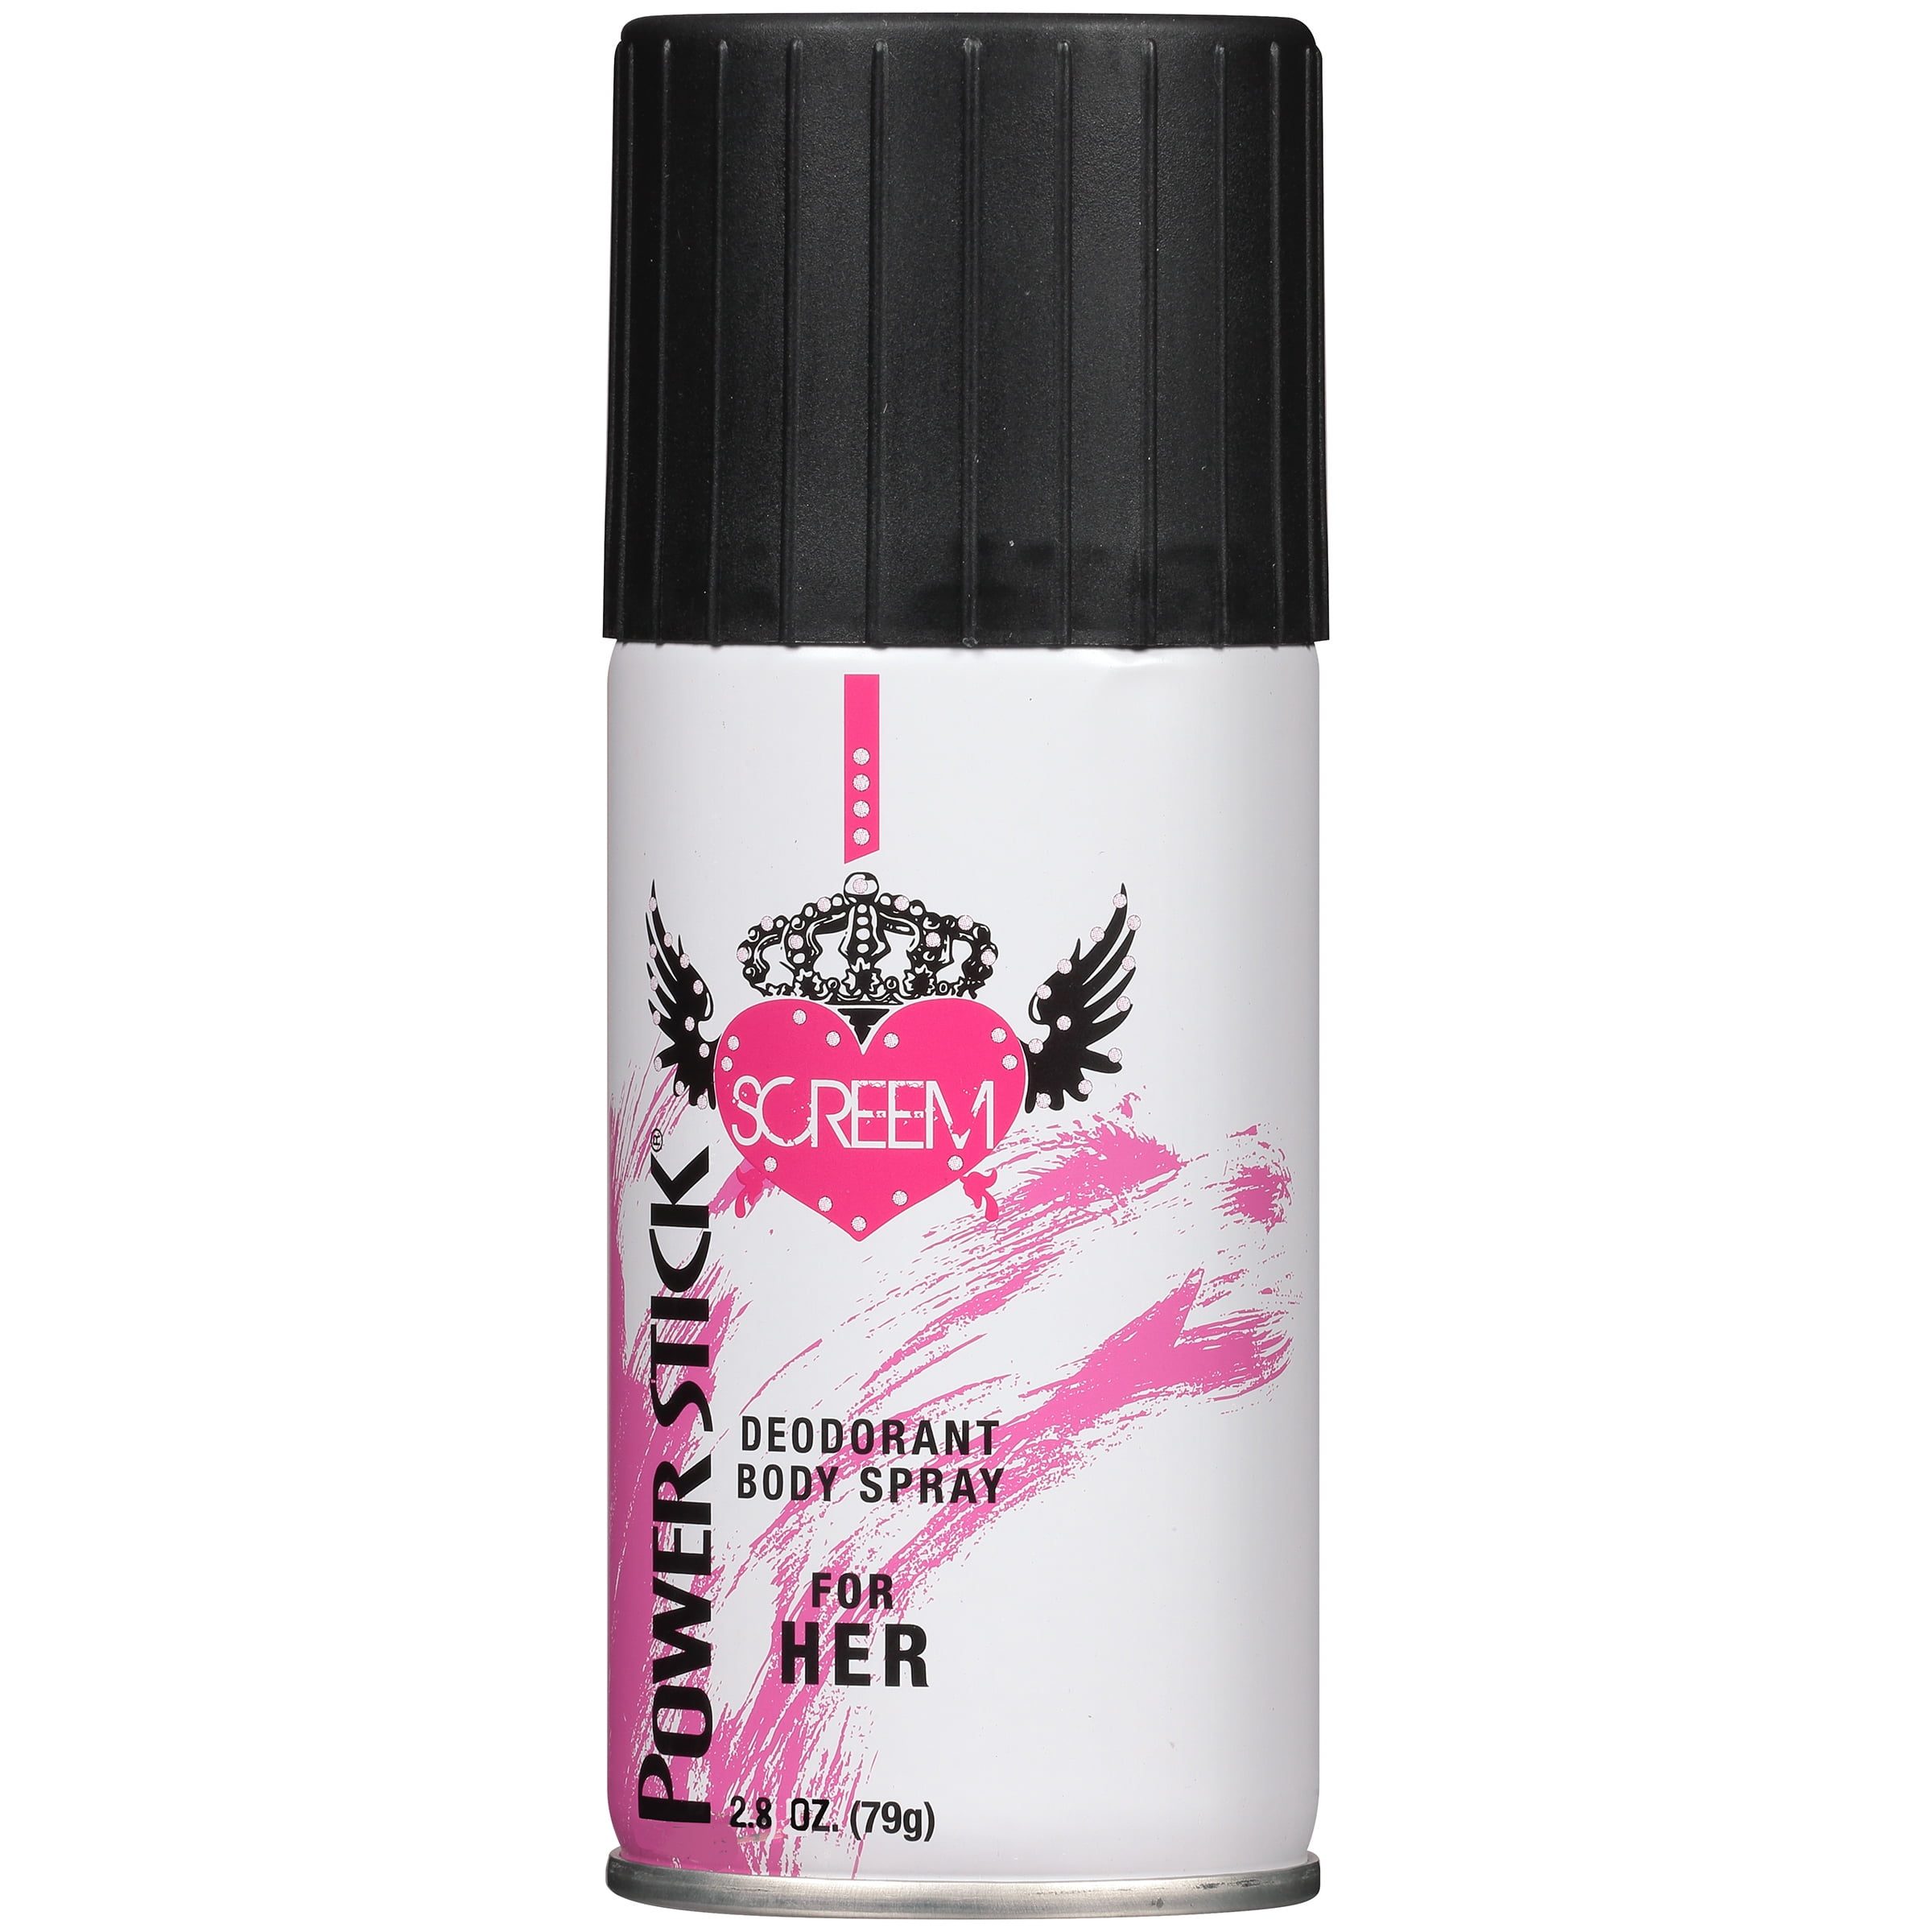 Stick for Her Pink Spray 2.8 oz. - Walmart.com